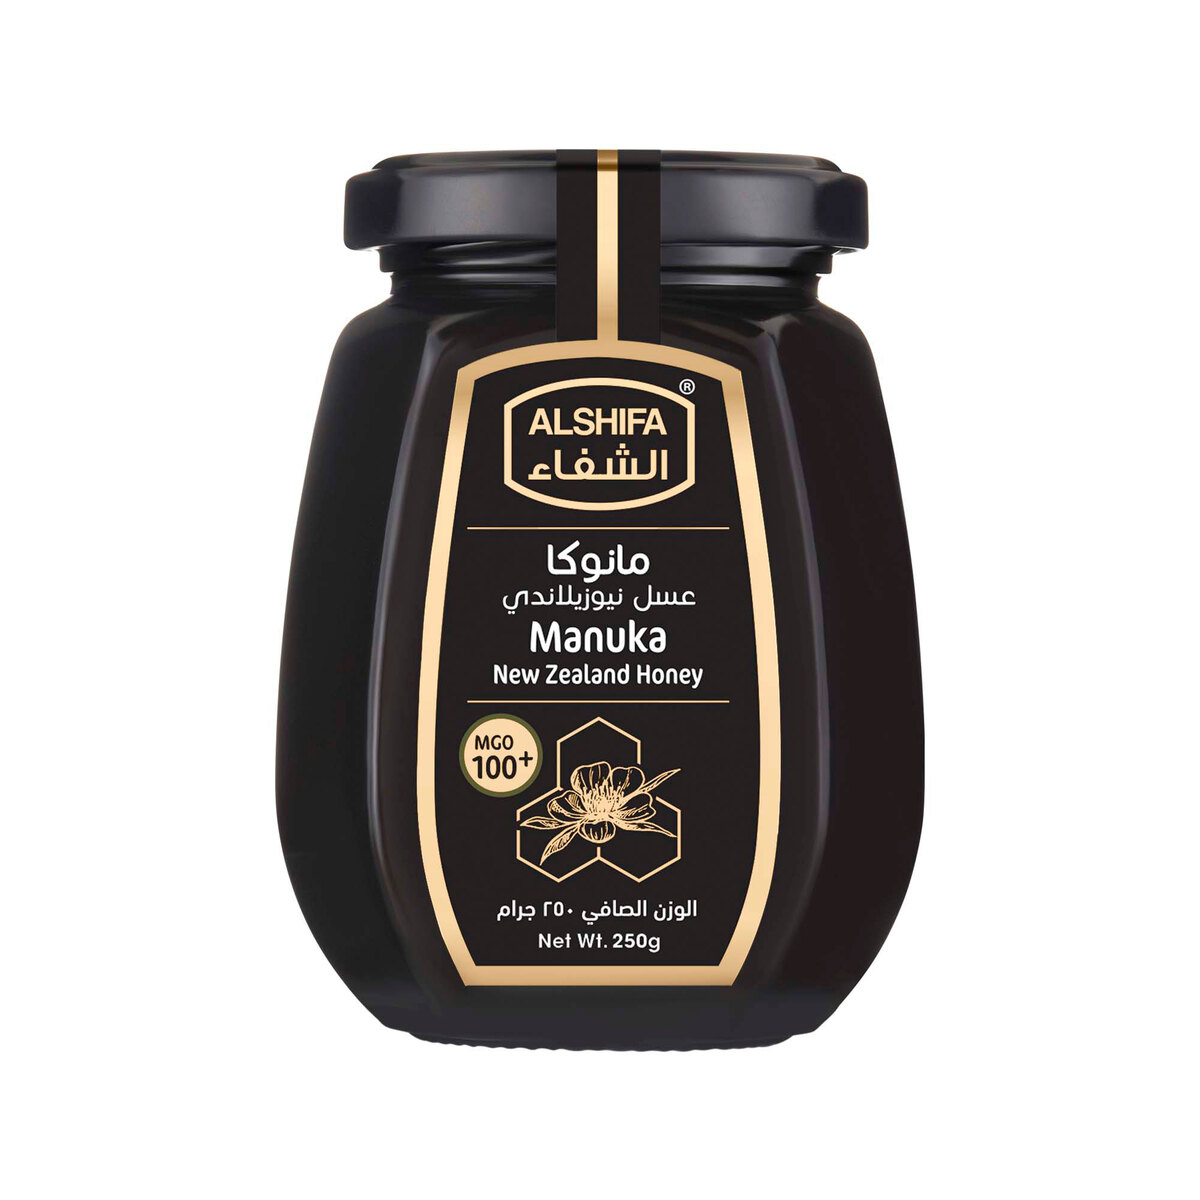 Al Shifa Manuka New Zealand Honey 250 g